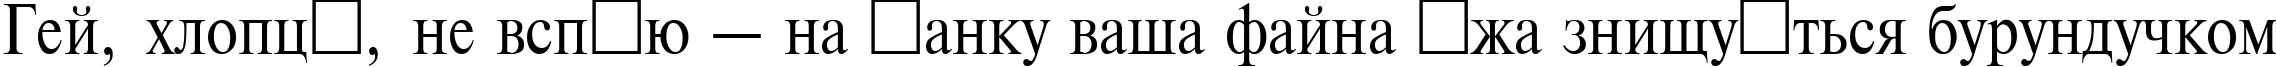 Пример написания шрифтом TimesET 85 текста на украинском